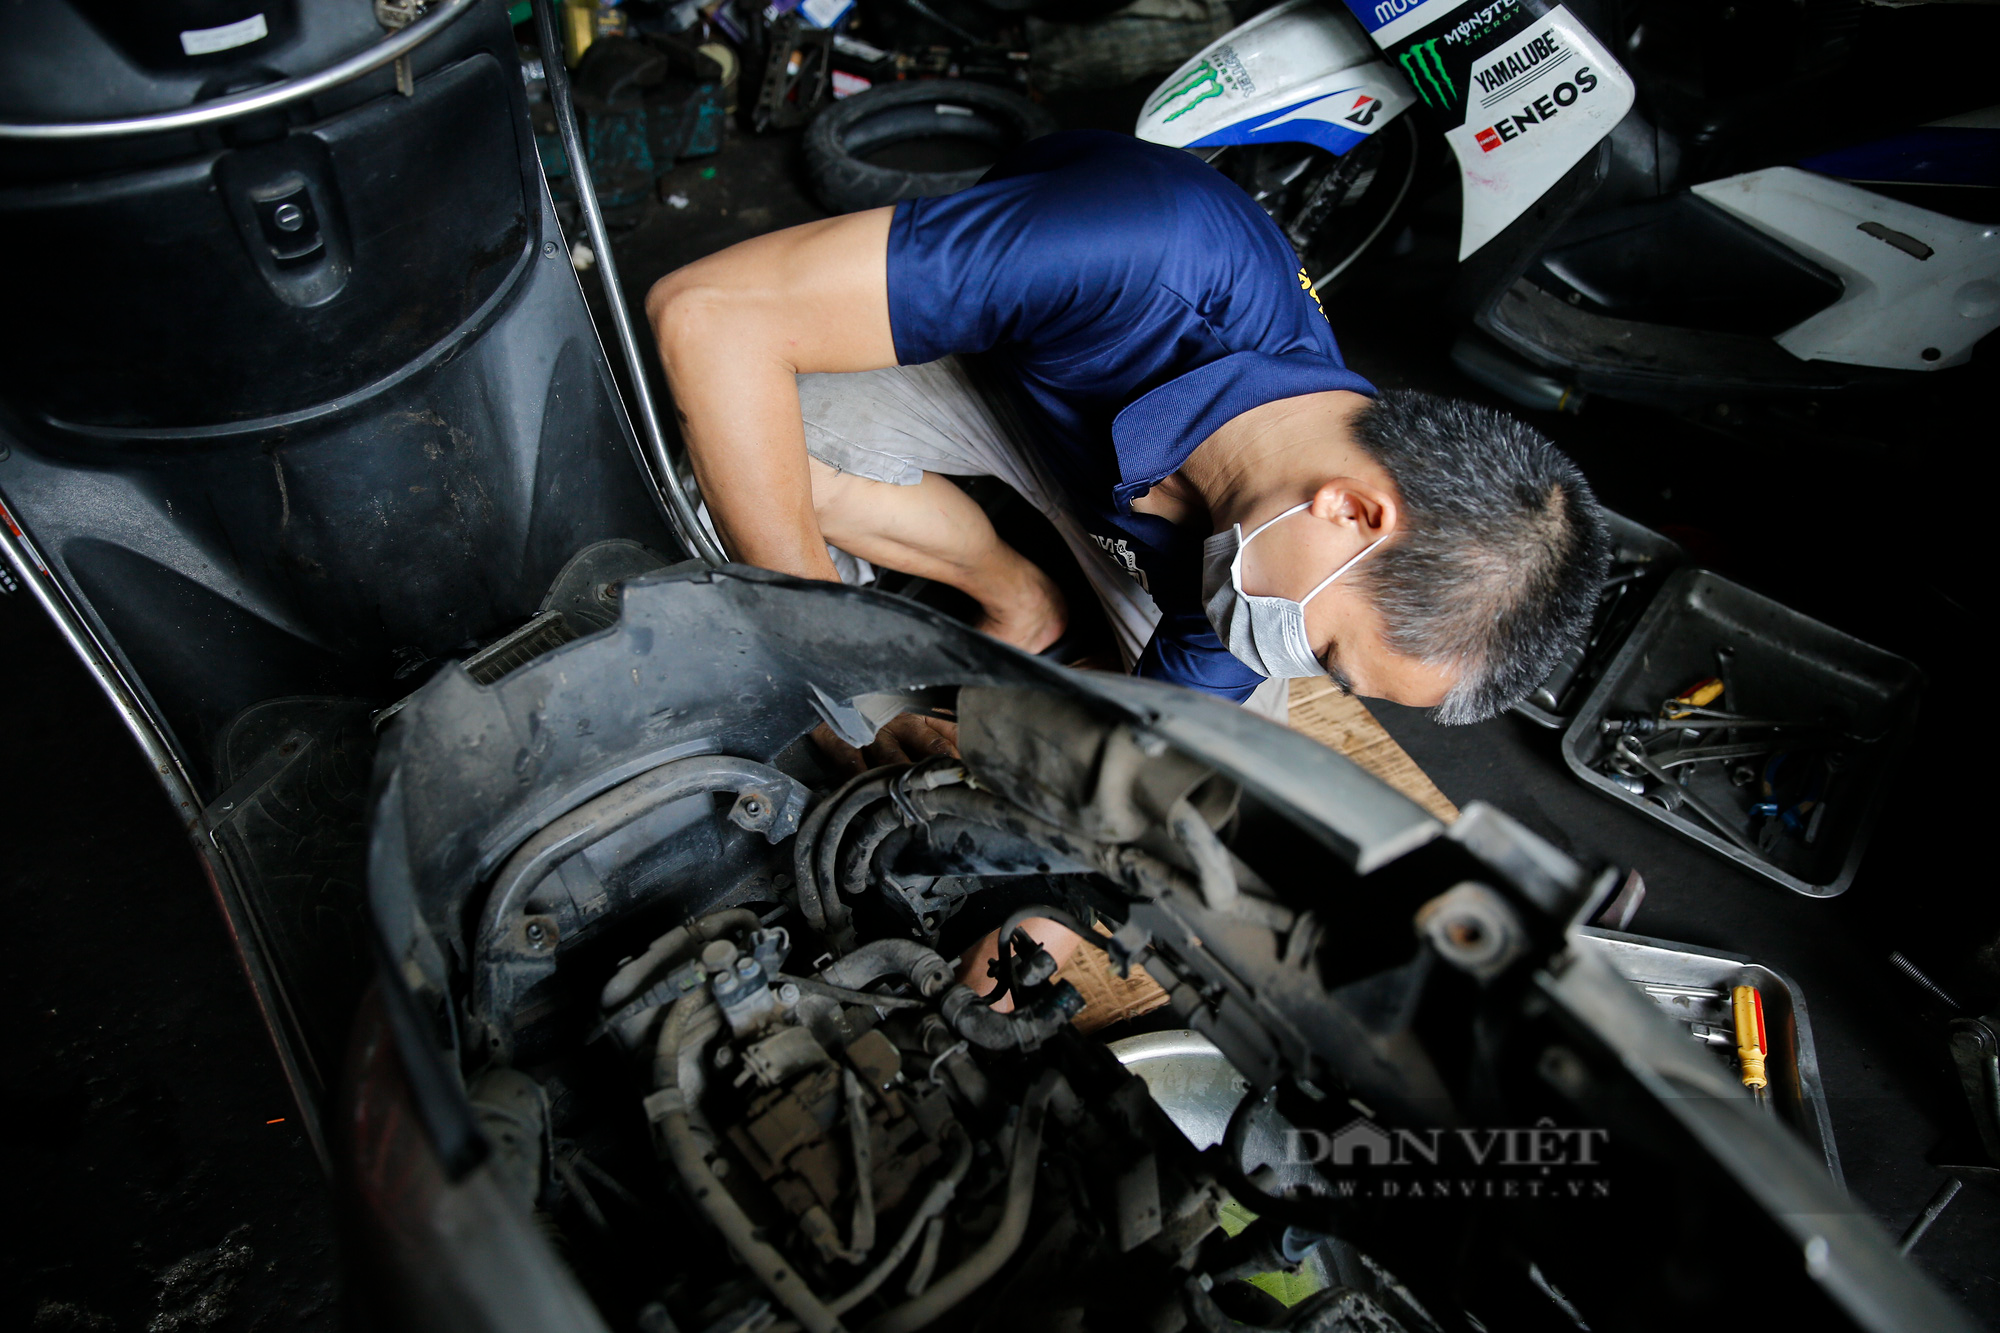 Sửa xe máy tại Hà Nội với dịch vụ chuyên nghiệp, tận tâm và giá cả phải chăng sẽ mang lại cho bạn sự an tâm và tin tưởng khi sử dụng chiếc xe của mình. Khám phá ngay để có những trải nghiệm mới và tốt hơn.